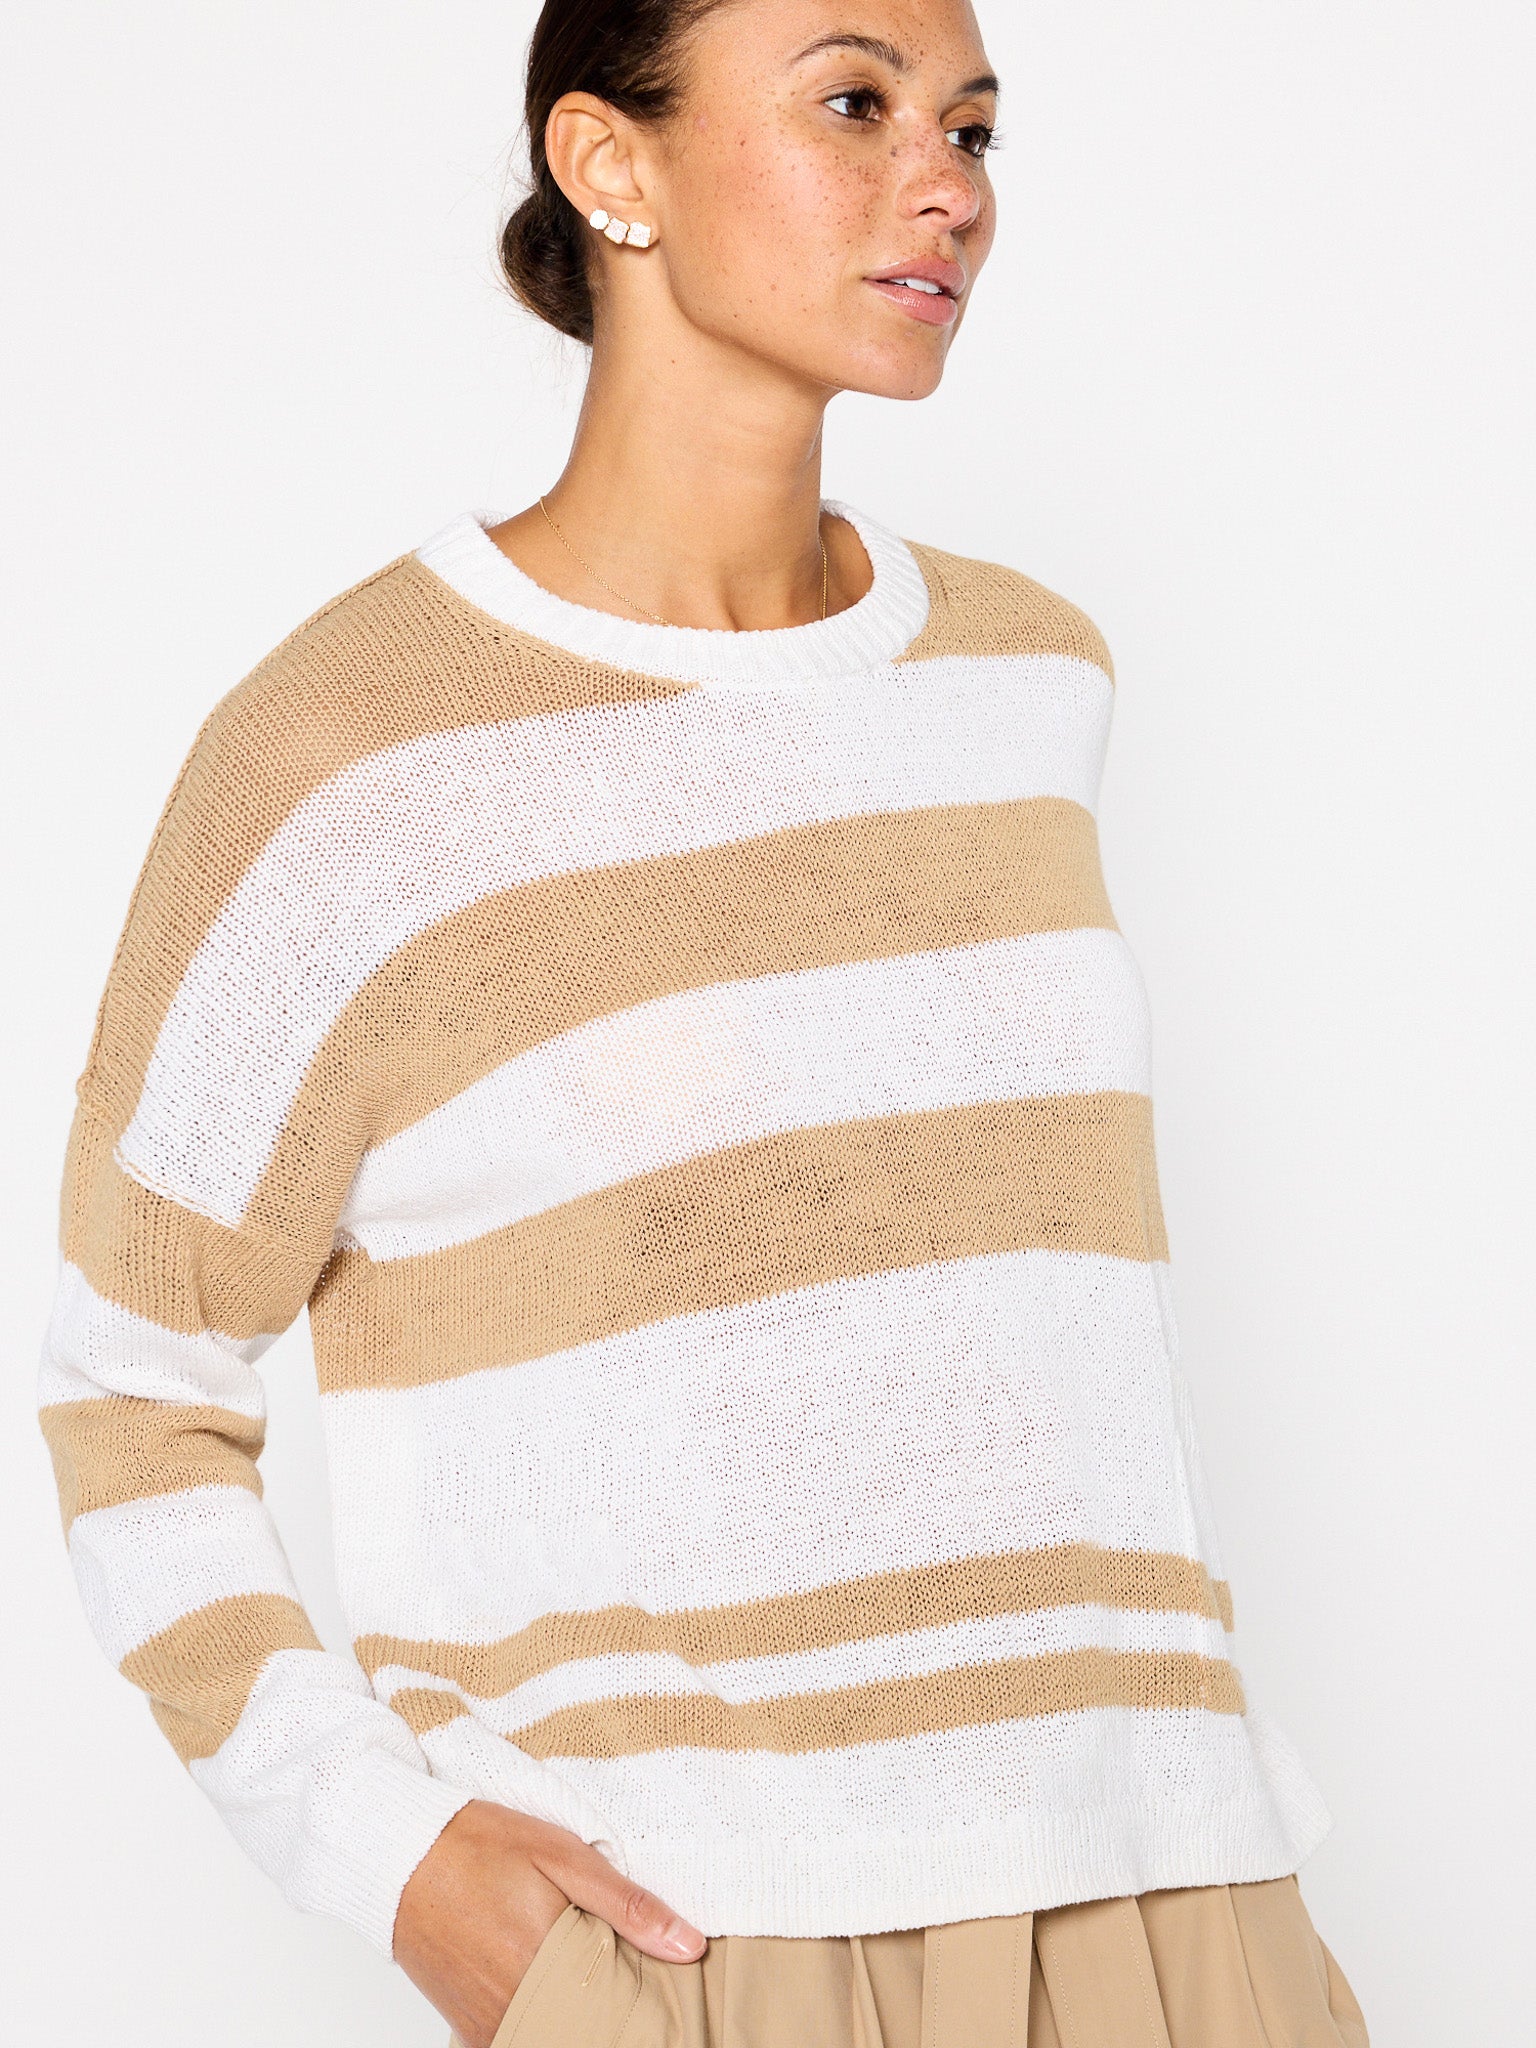 Xila tan white stripe cotton-linen crewneck sweater side view